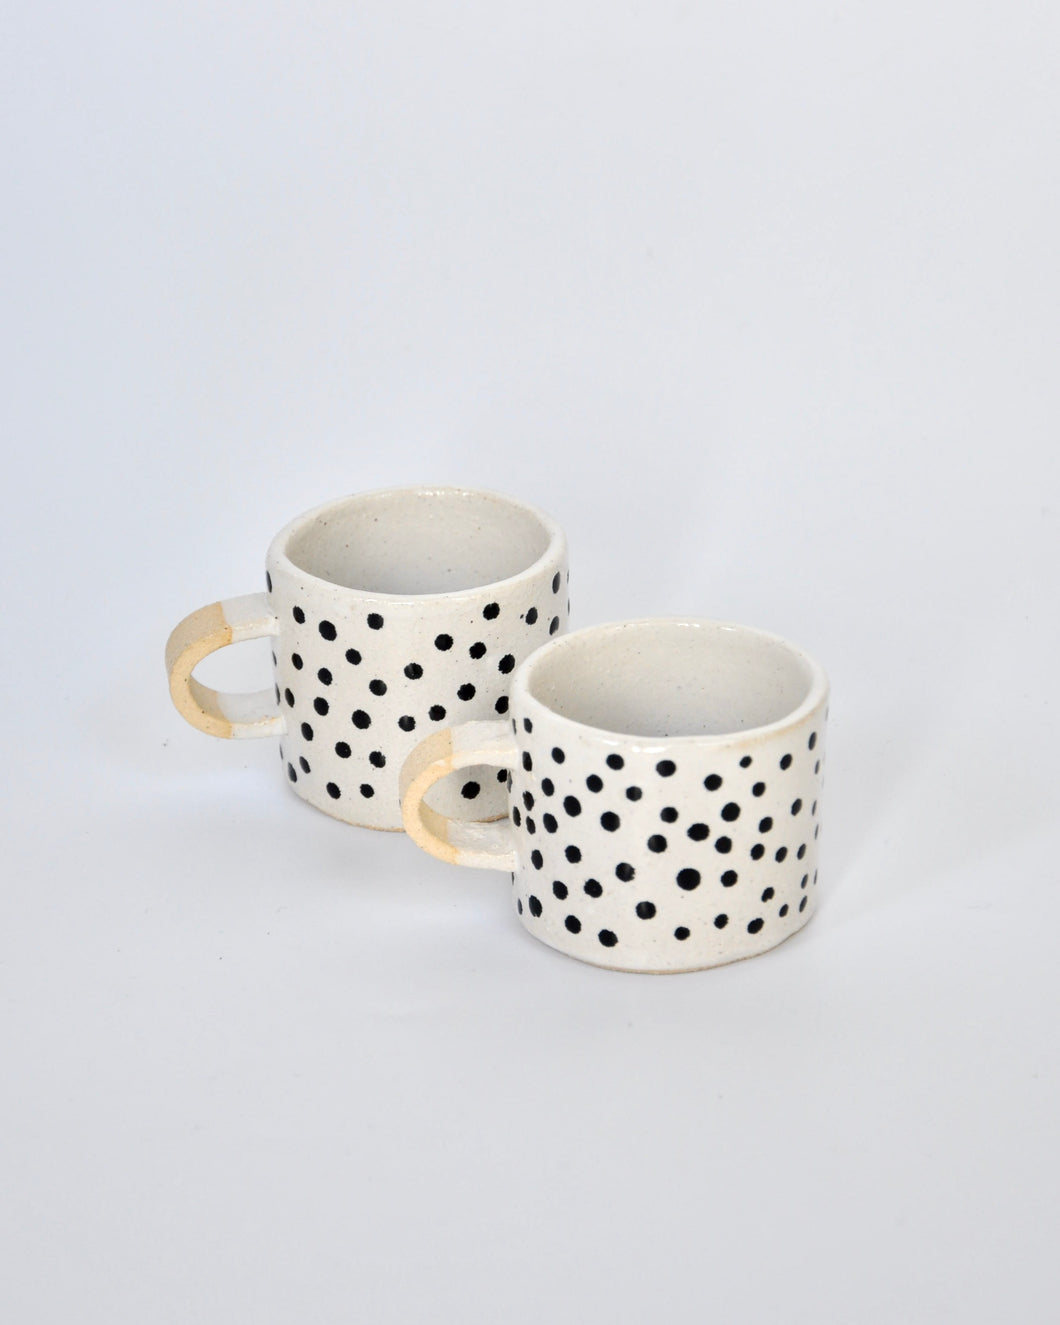 Elisa Ceramics Polkadots Espresso Mugs